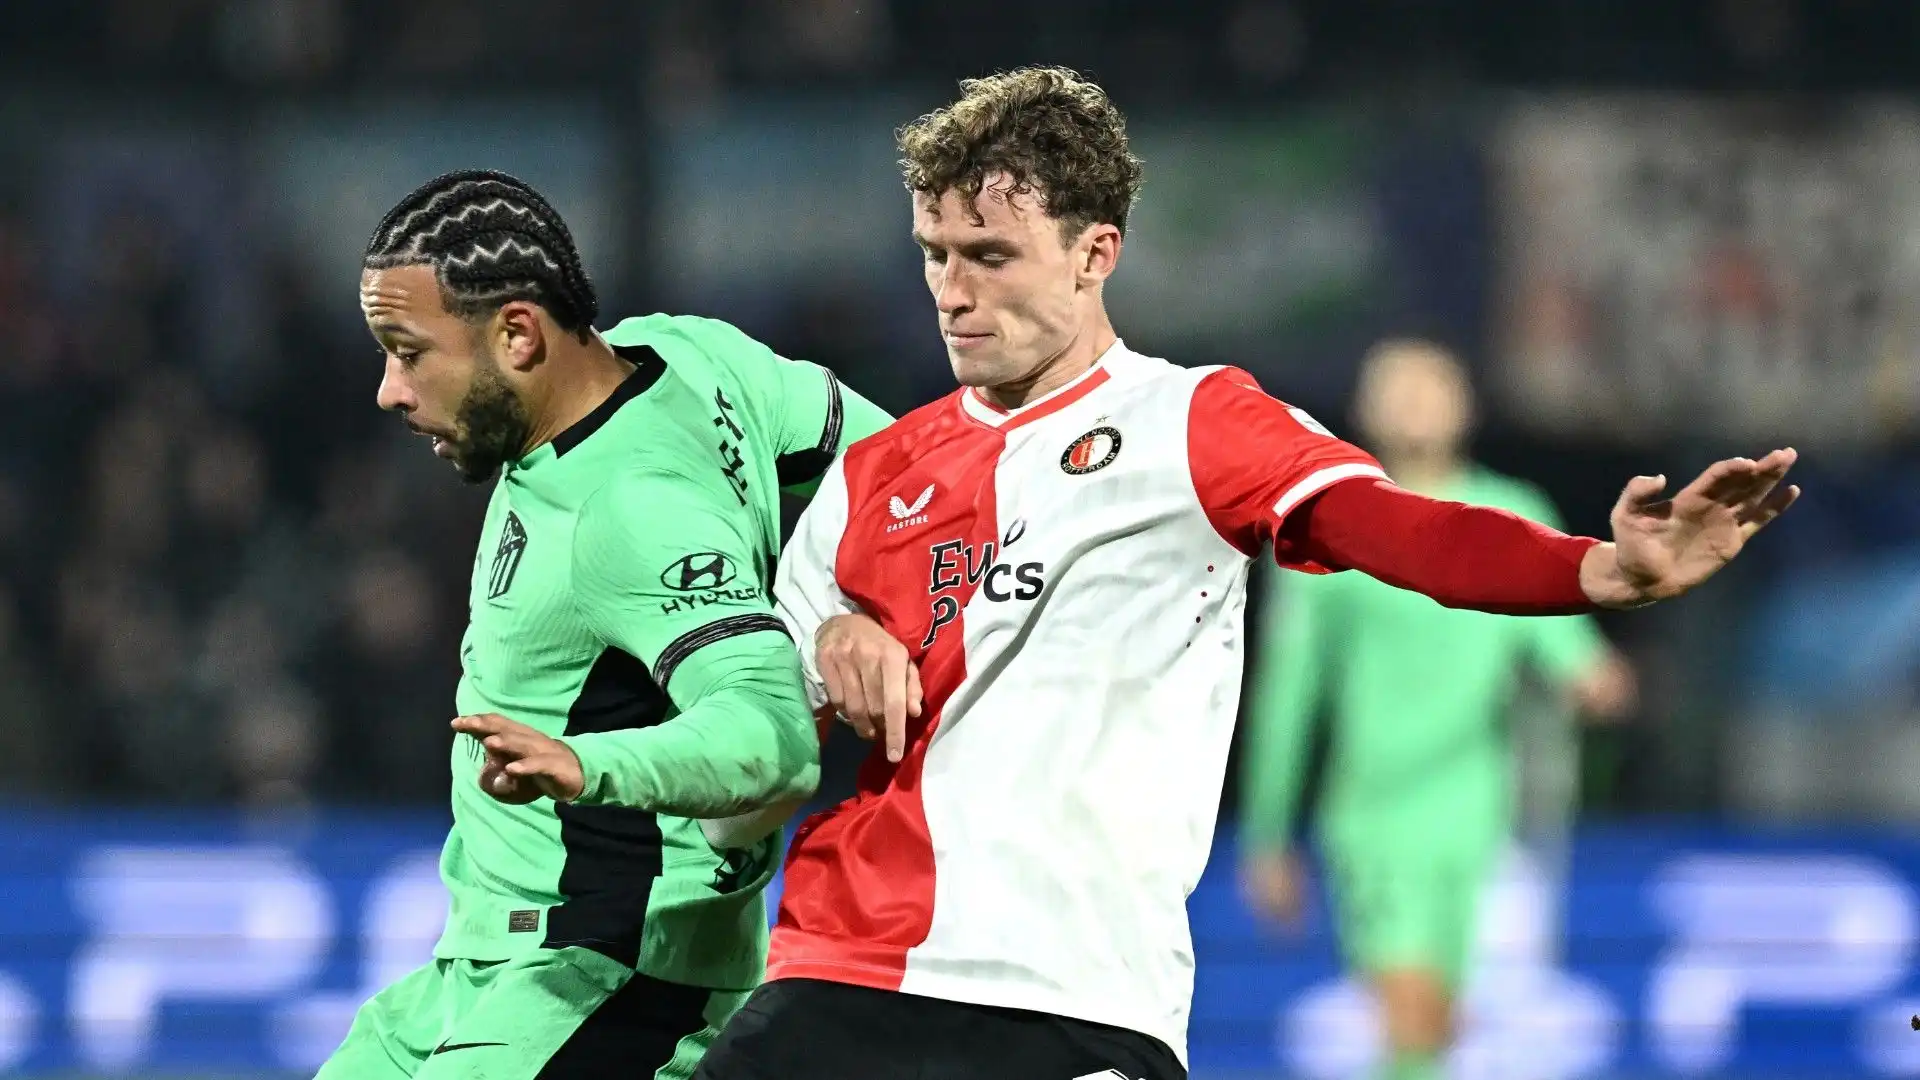 Wieffer ha un contratto con il Feyenoord fino al 2027